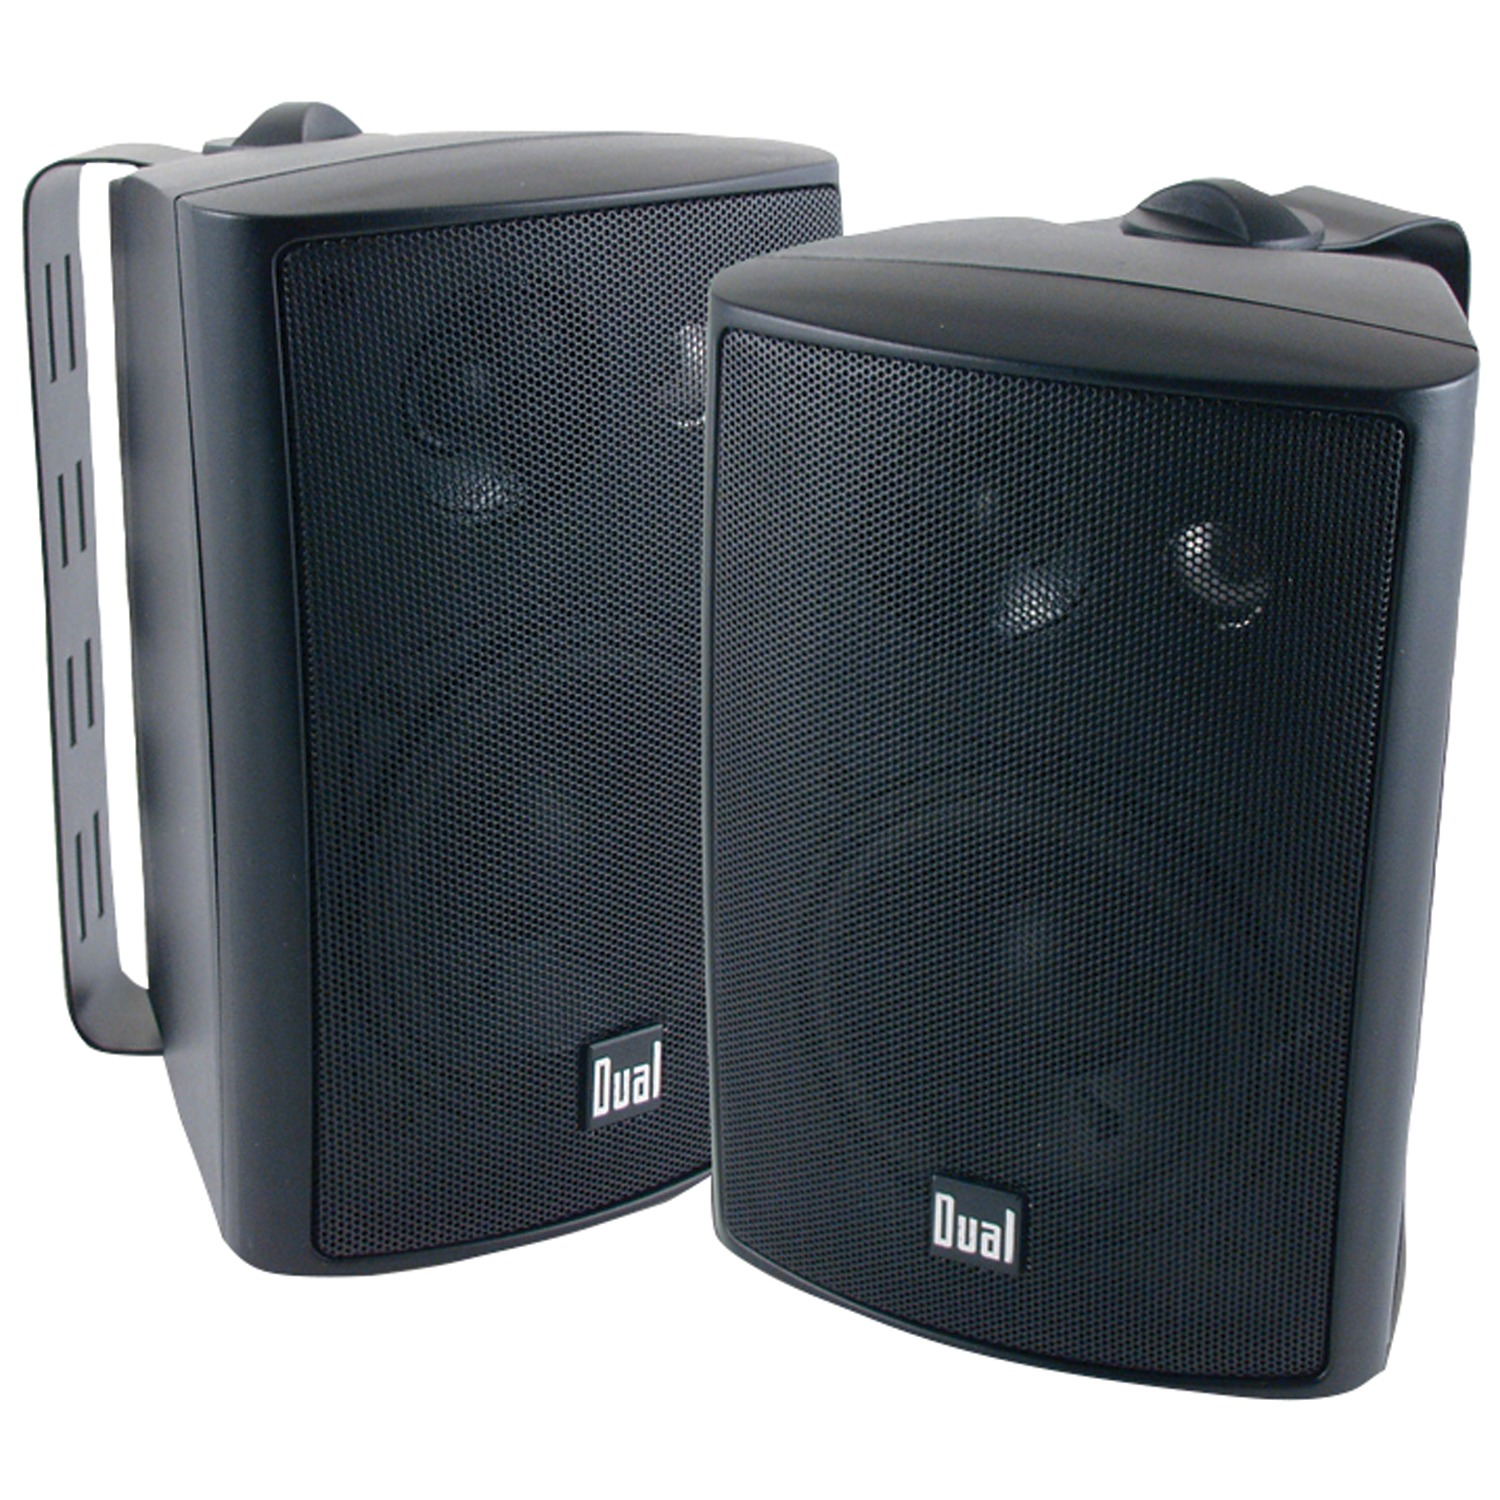 Dual LU47PB 4" 3-Way Indoor/Outdoor Speakers (Black) - image 1 of 2